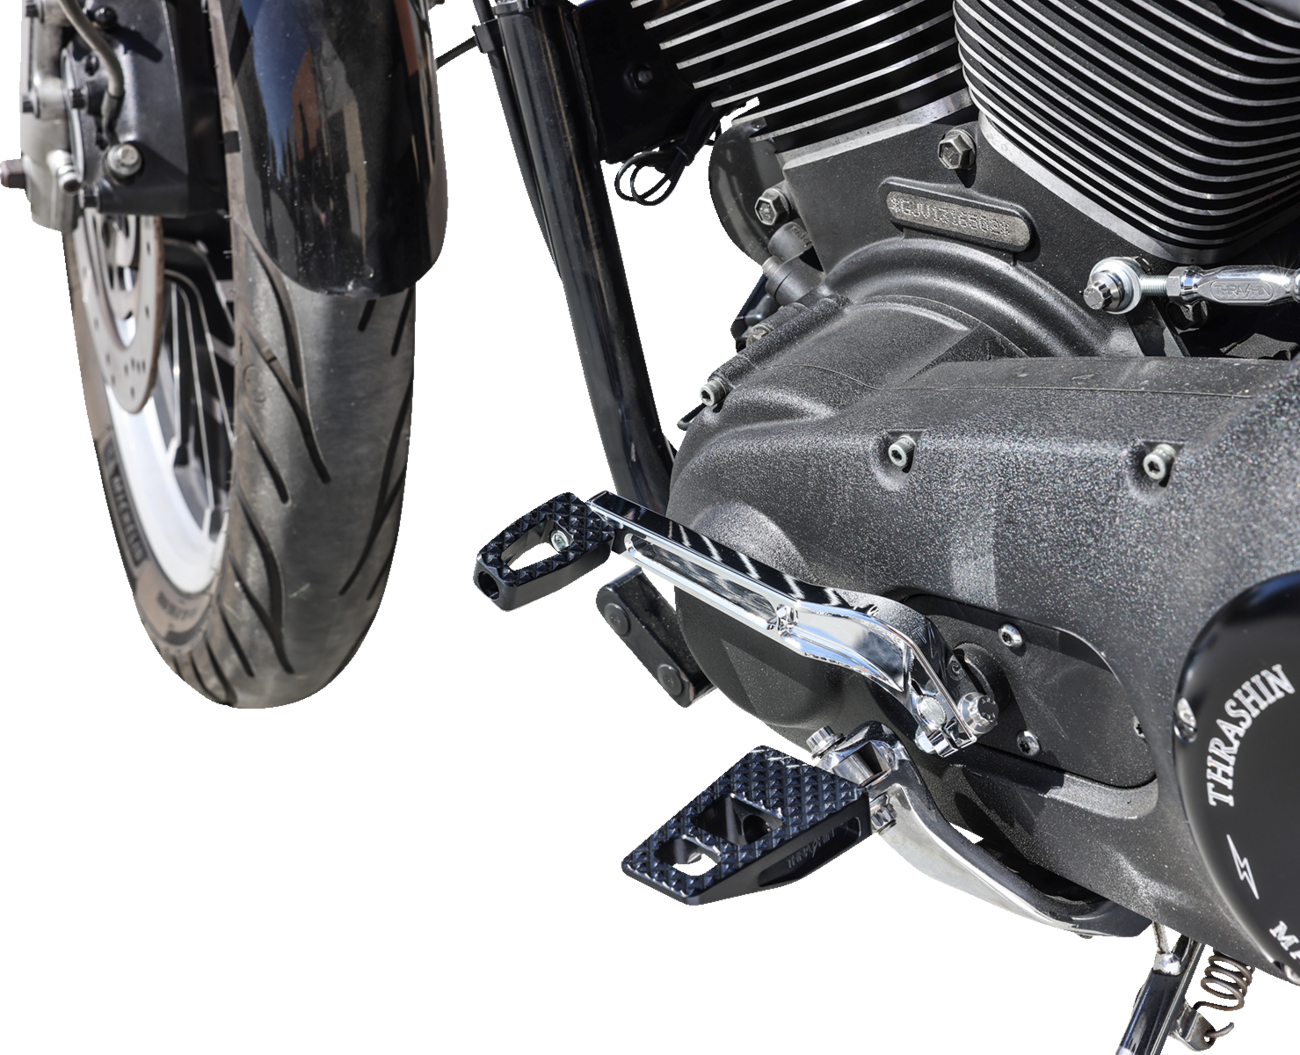 Black P-54 Change Pedal for Harley Davidson